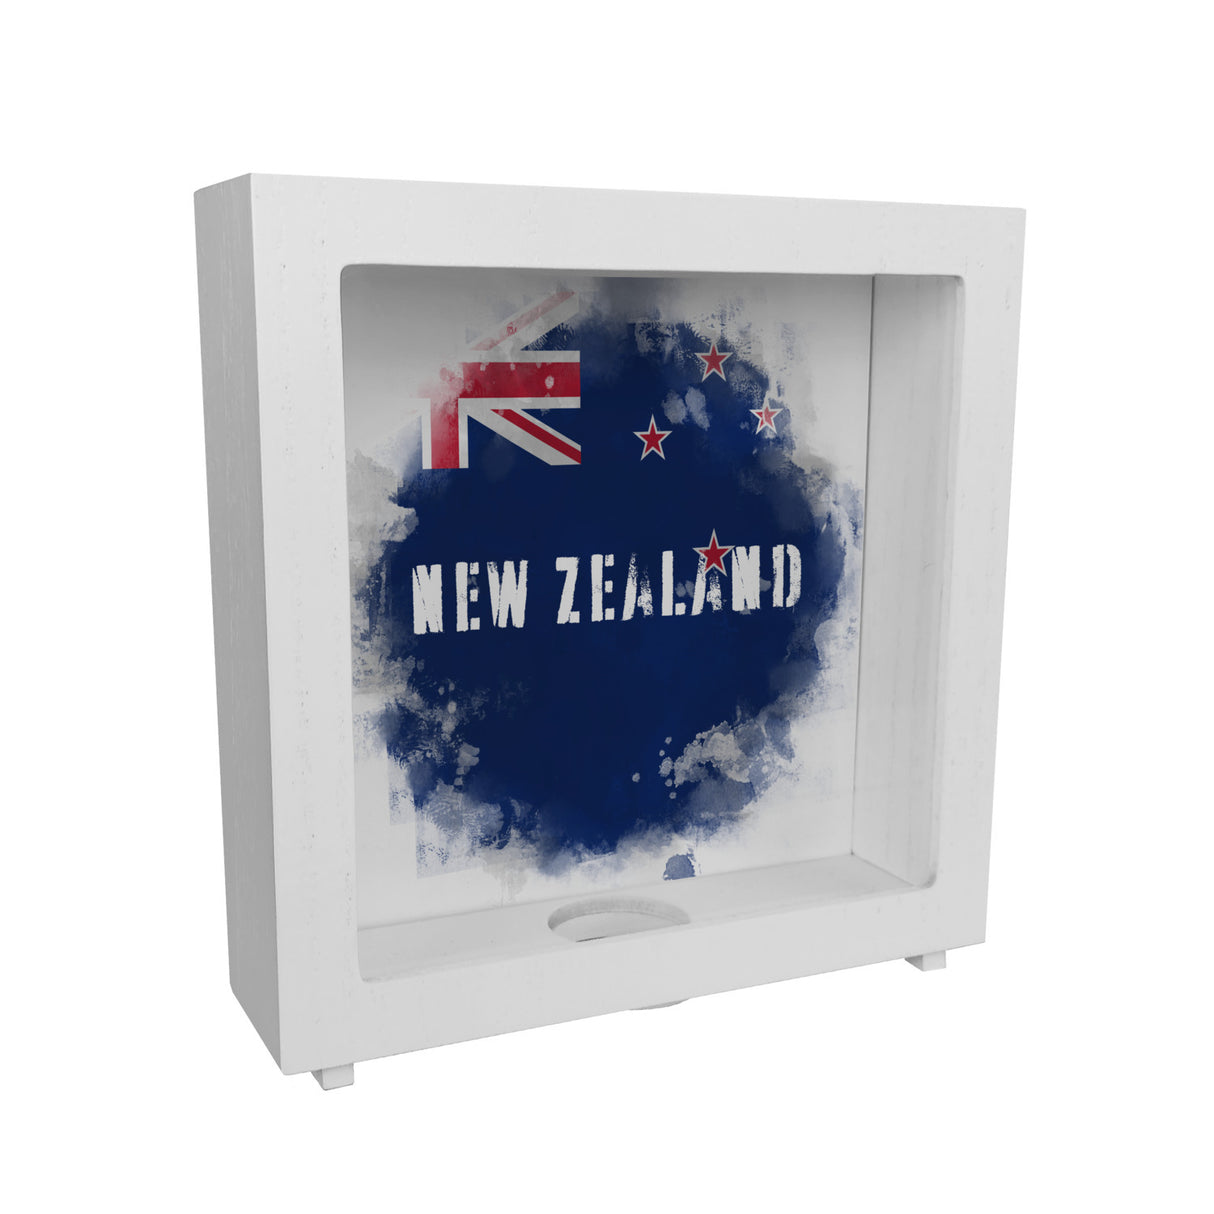 Spardose mit Neuseeland-Flagge im Used Look - Sparschwein für Urlauber